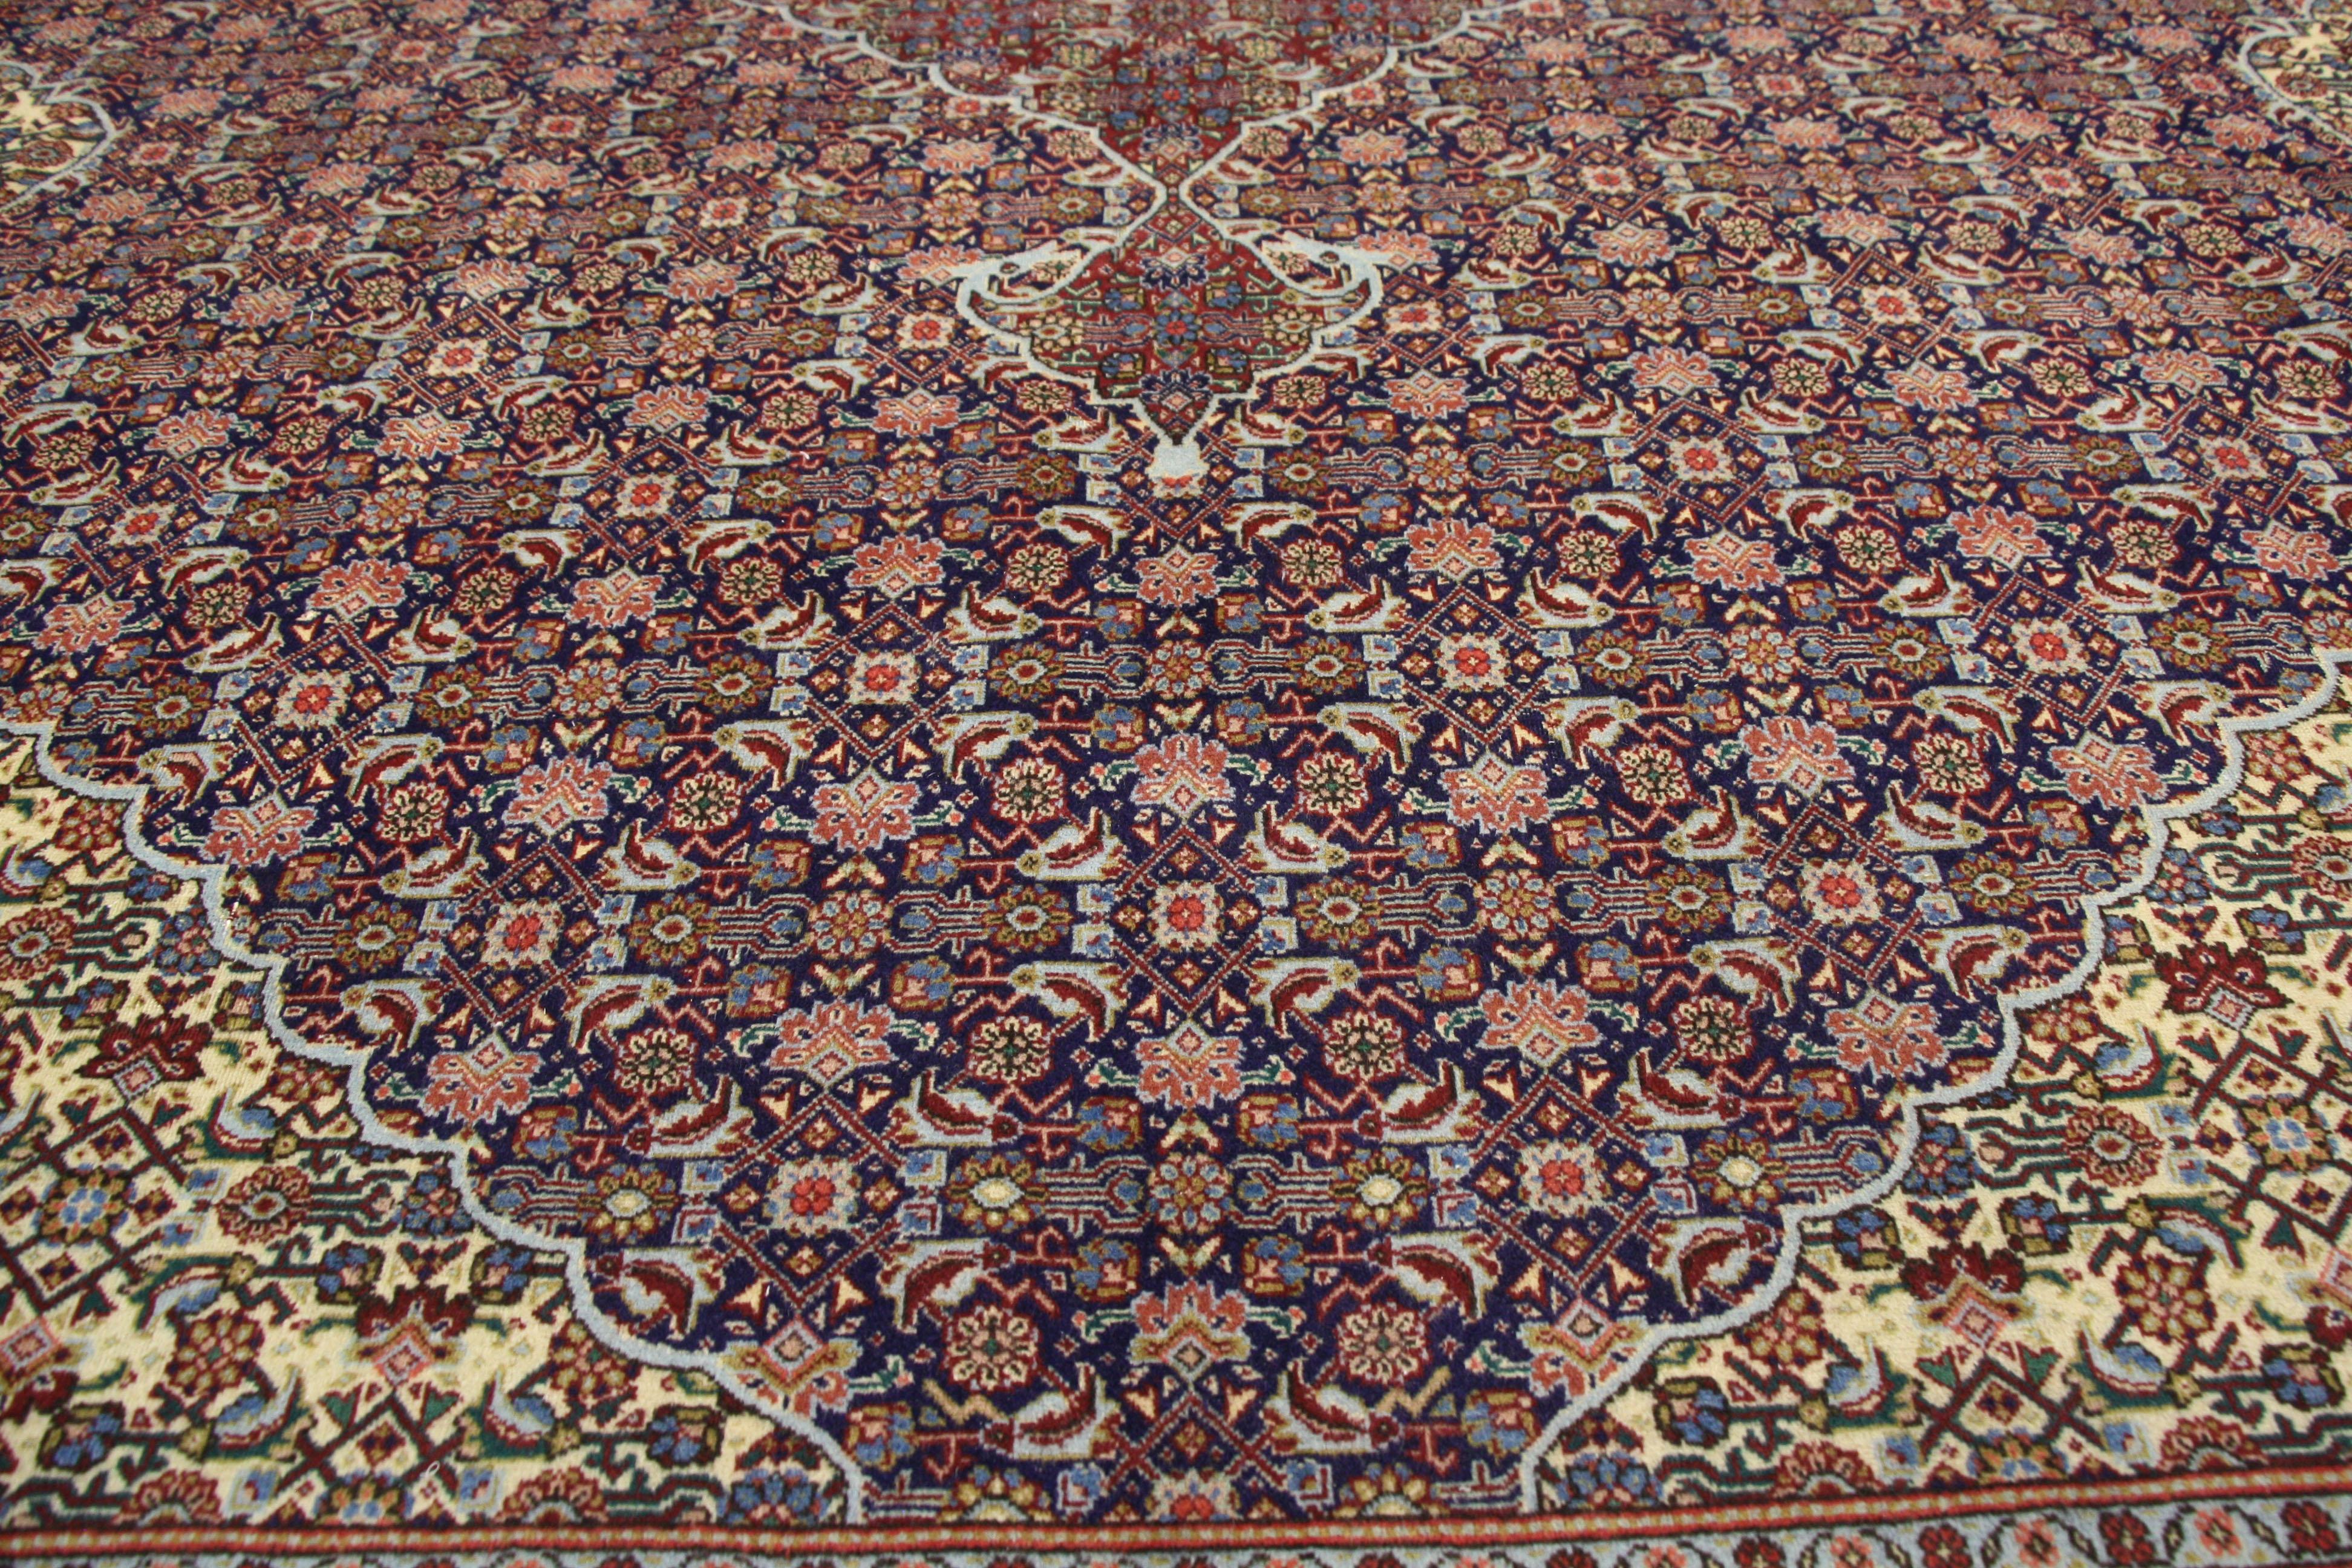 60713, tapis vintage persan Tabriz à motif de poisson Mahi, style traditionnel. Ce tapis Mahi Tabriz de style traditionnel présente le célèbre motif de poisson dans une palette brillante de bijoux. Au centre de la scène, un losange de grandeur et